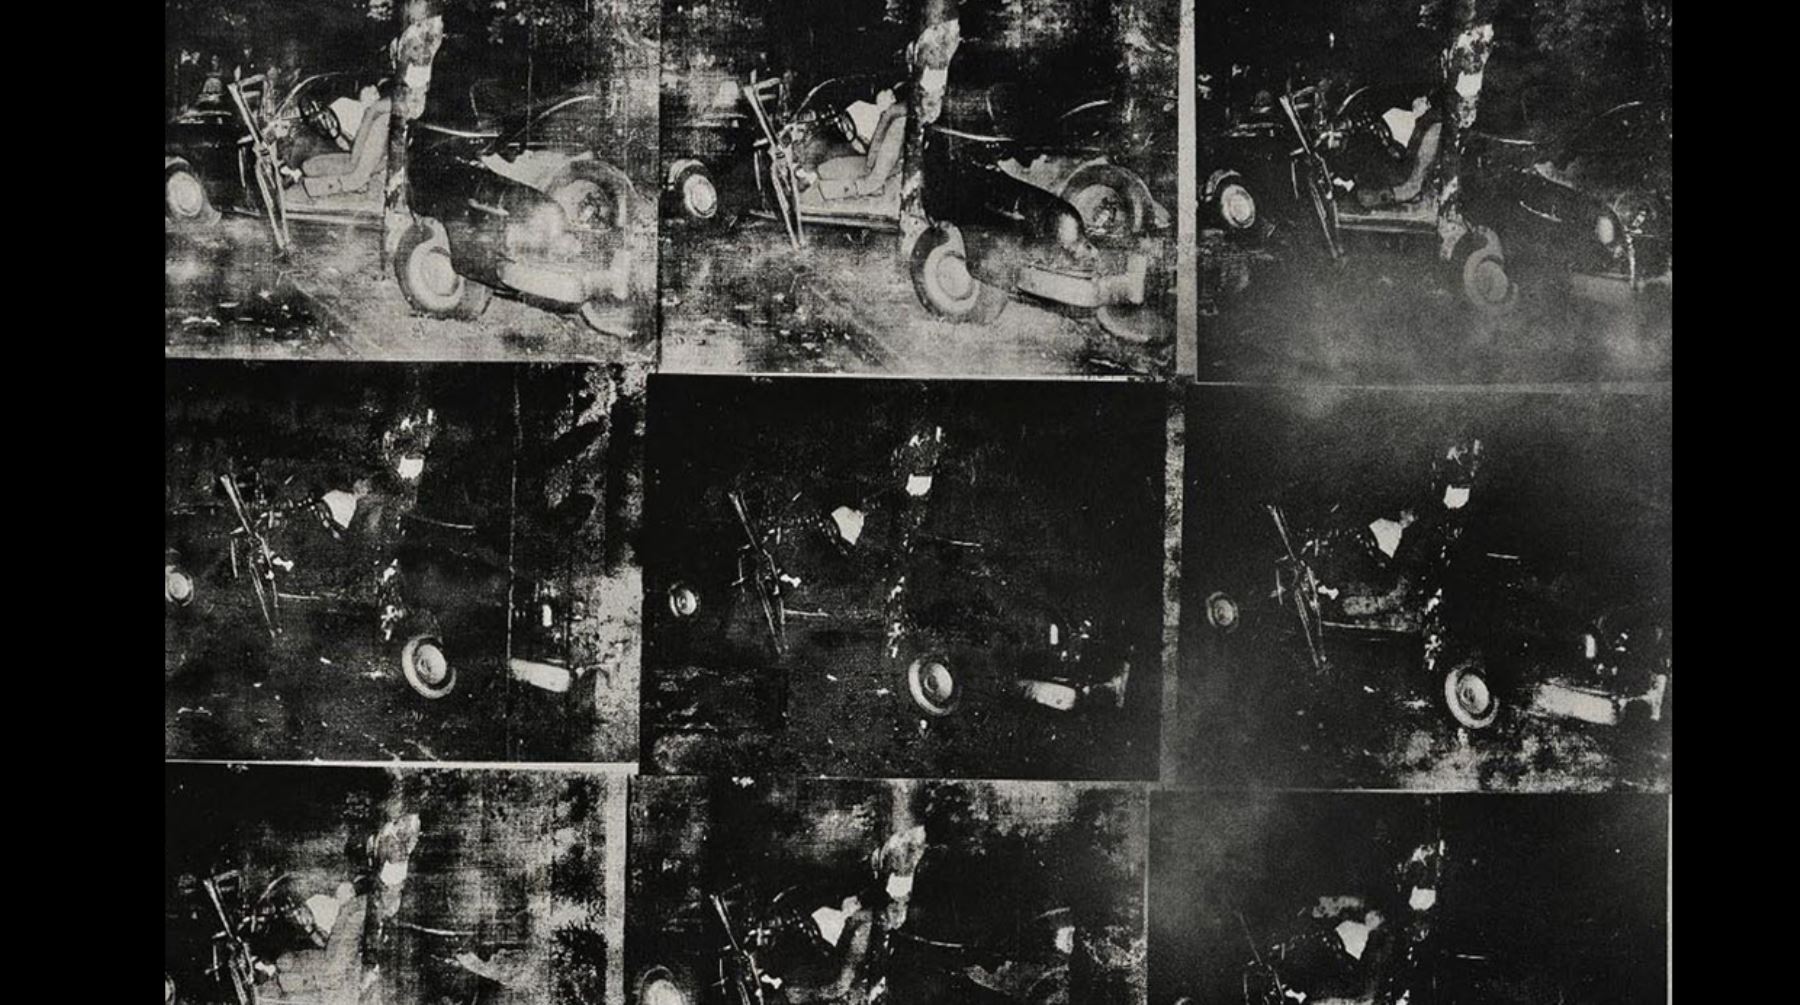 7- Andy Warhol, "Accidente de auto plateado (doble desastre)", vendido por 105,44 millones de dólares, 13 de noviembre de 2013 en Sotheby